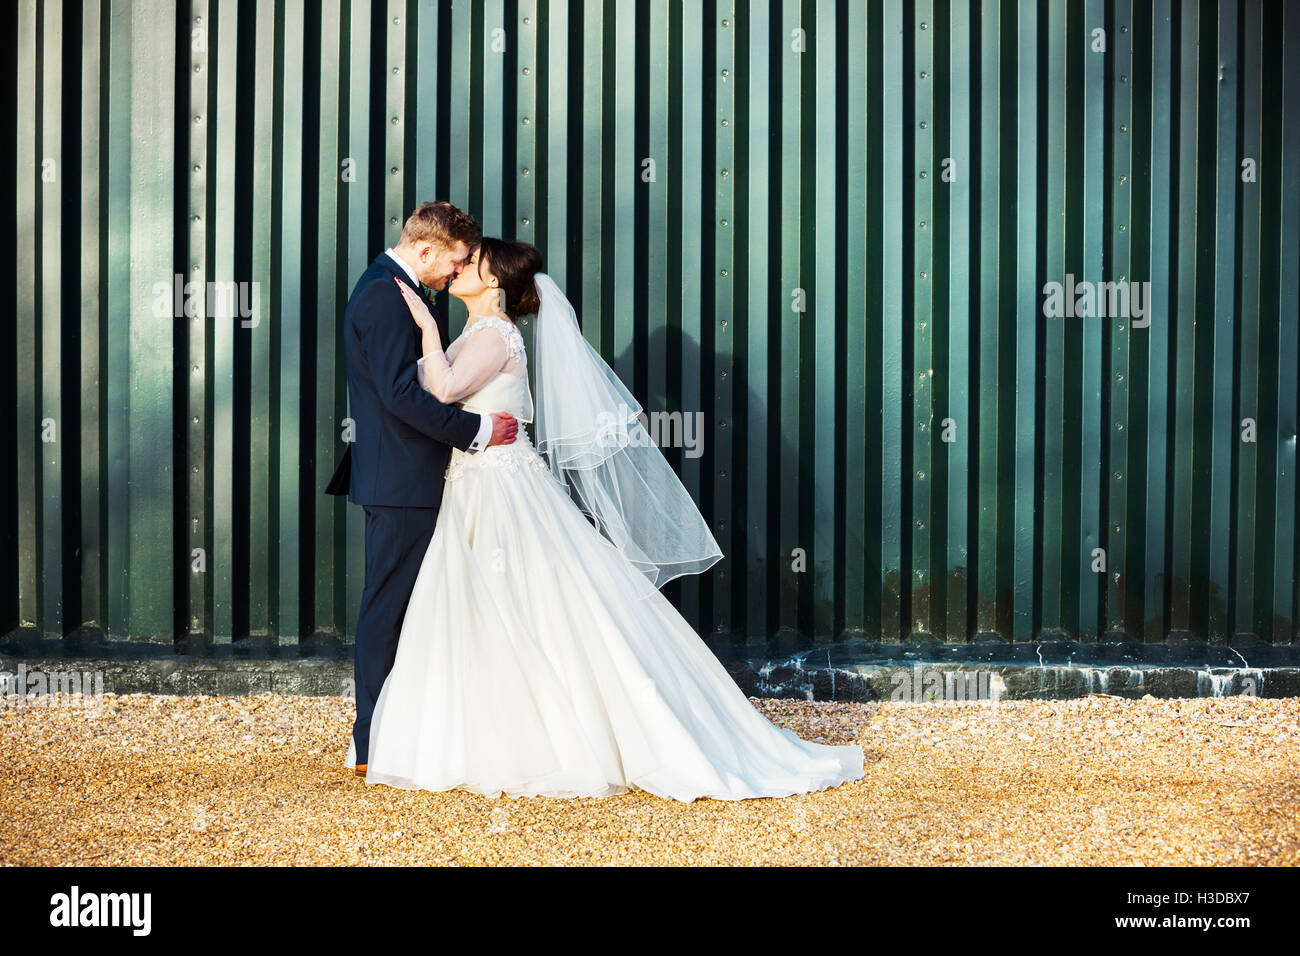 La novia y el novio en el día de su boda, besarse mutuamente. Foto de stock